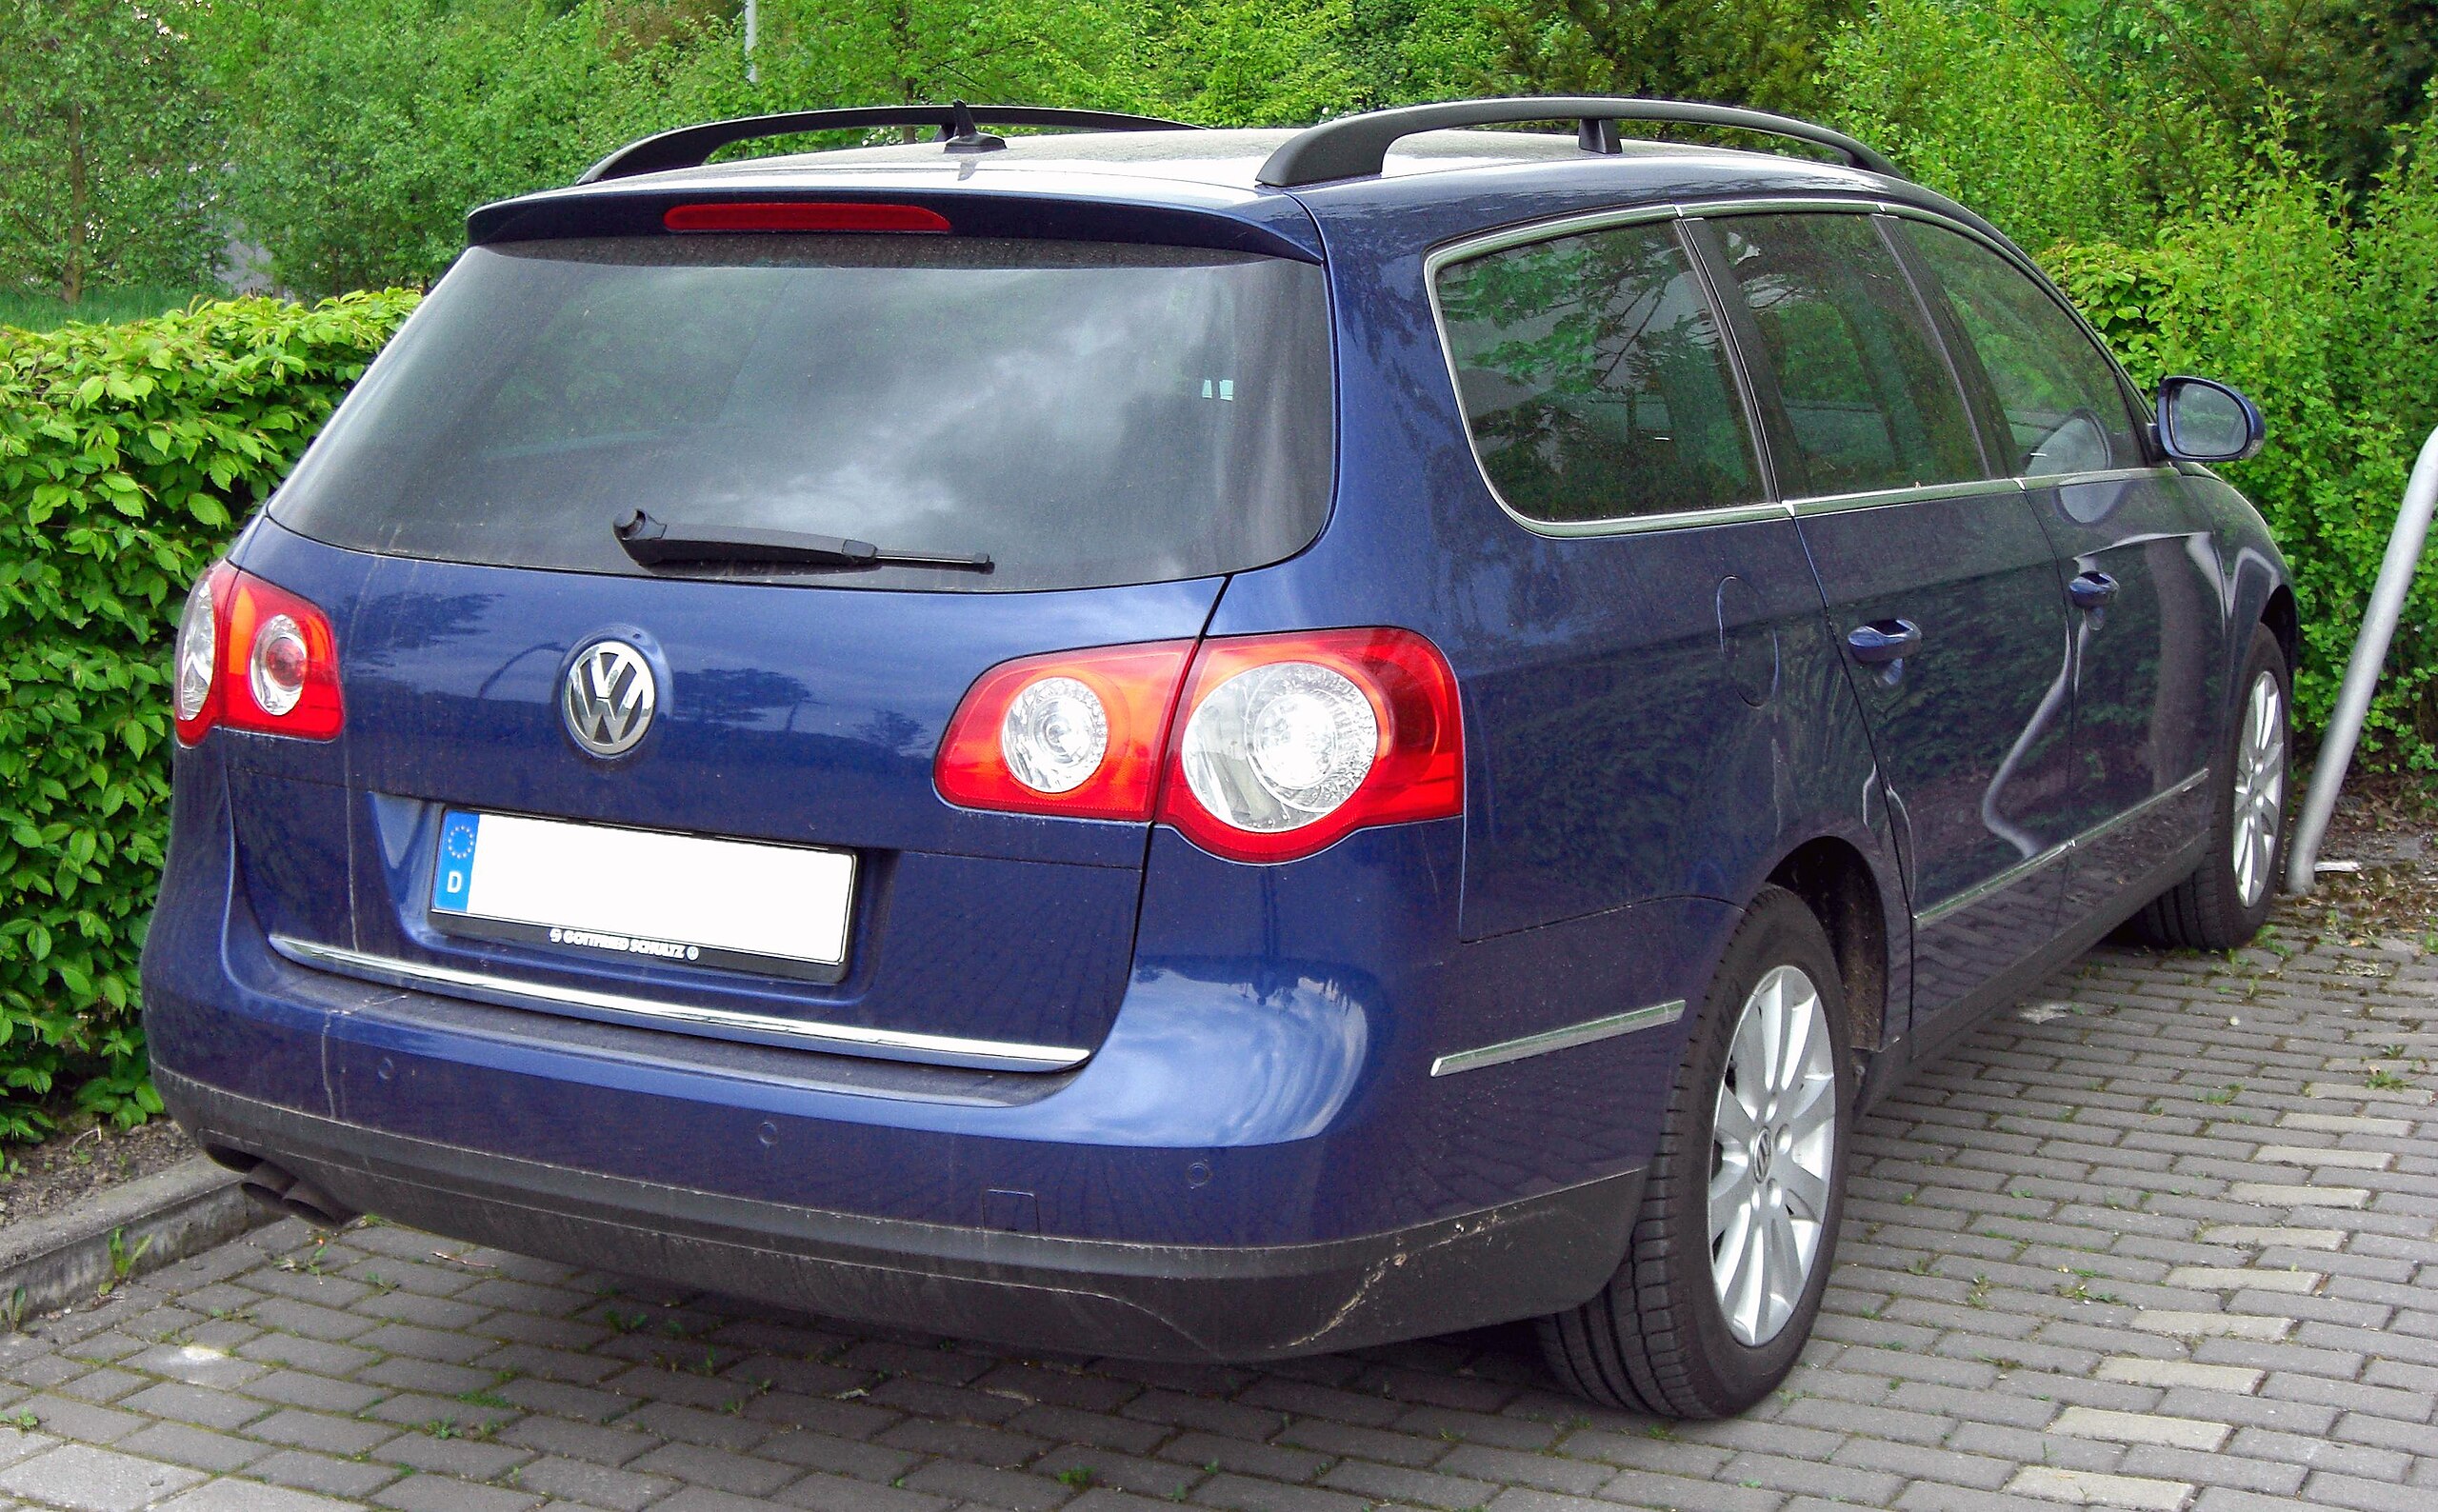 File:VW Passat B6 Variant 2.0 TDI Individual rear 20100829.jpg - Wikipedia